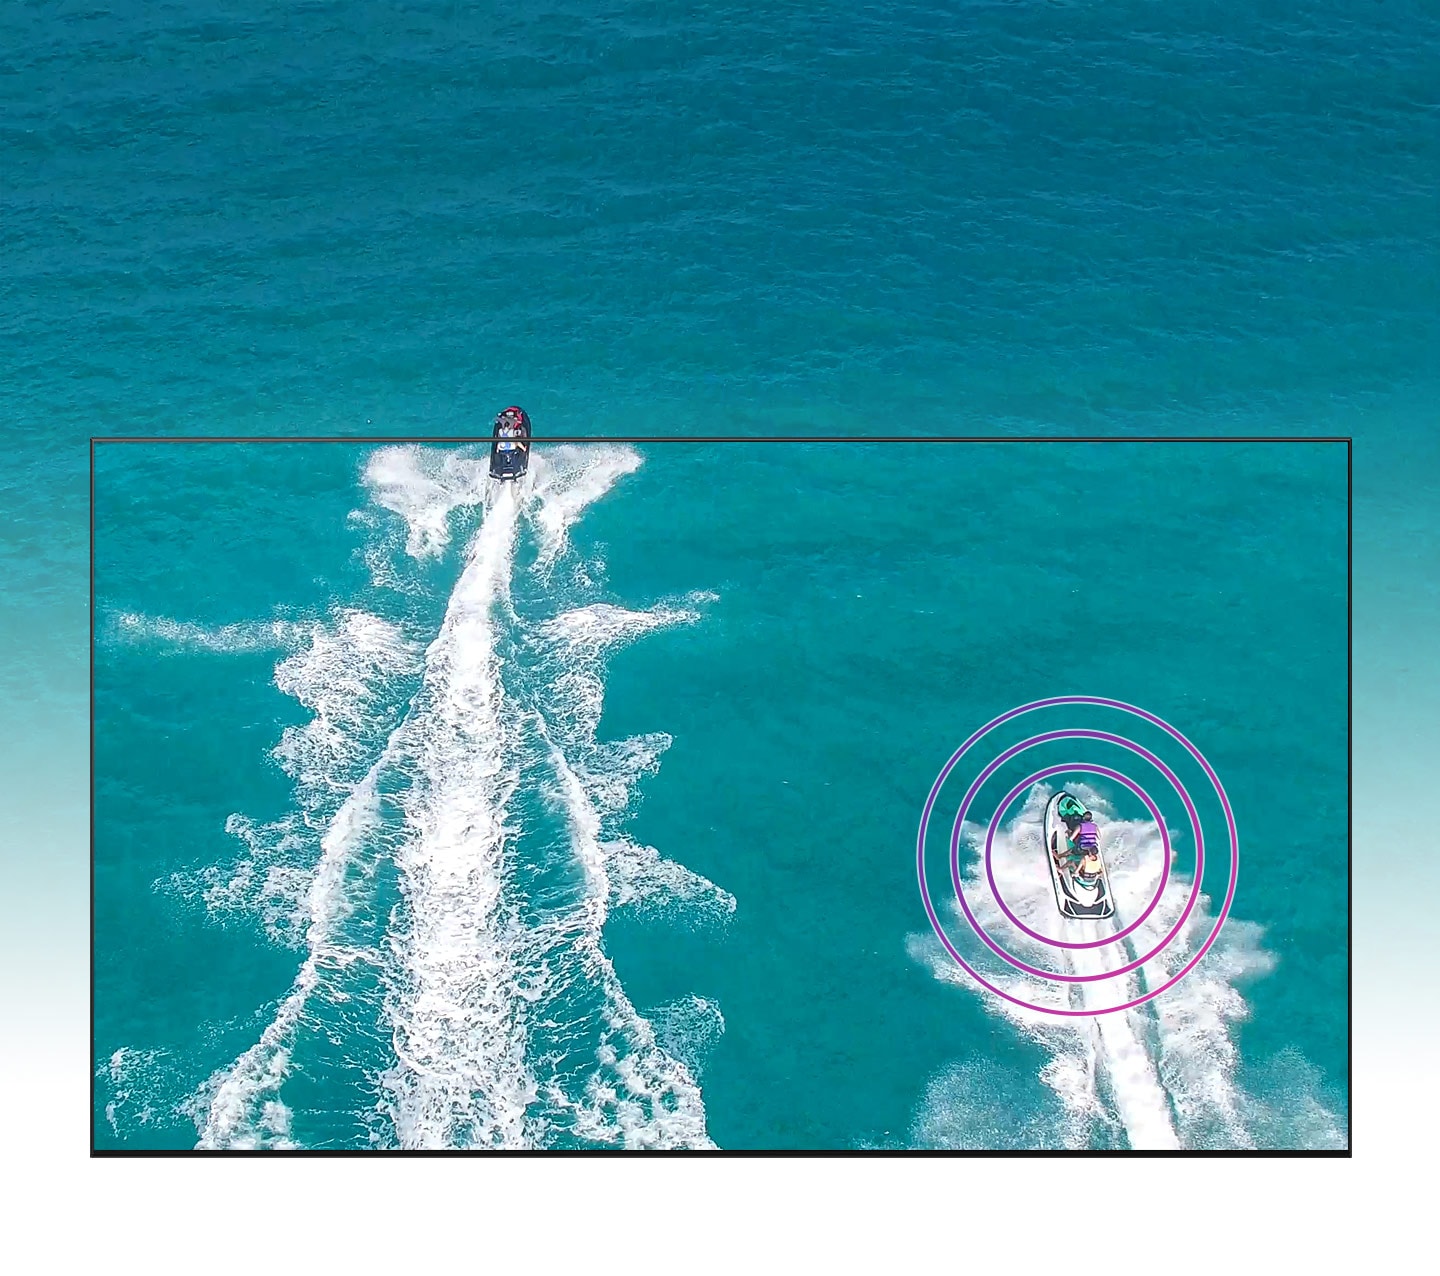 Dźwięk Podążający za Obrazem wzbogaci realizm każdej sceny - przekonaj się wybierając nowy telewizor Samsung 4K QN85A